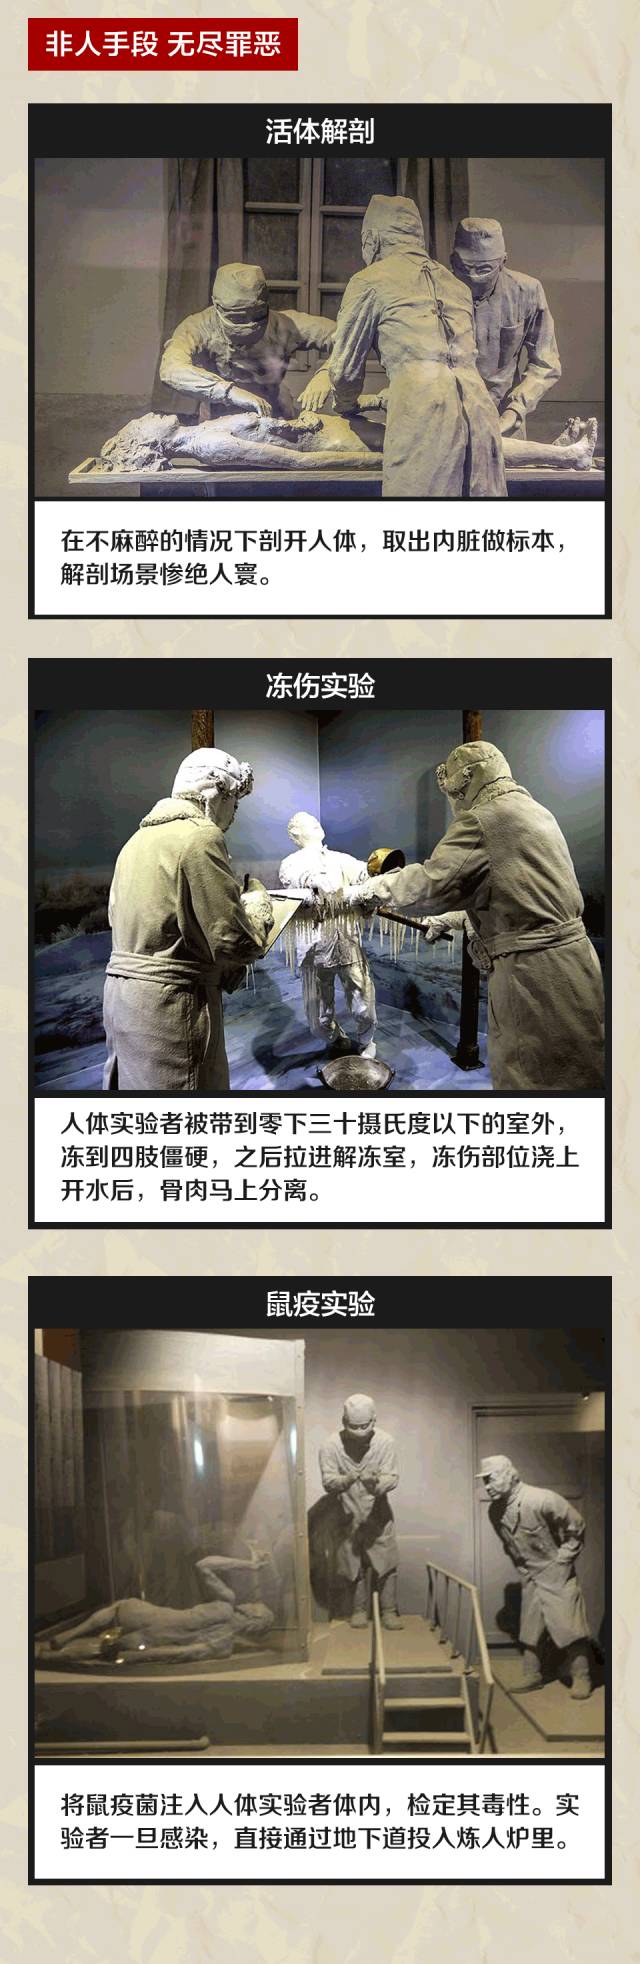 731部队 真相图片